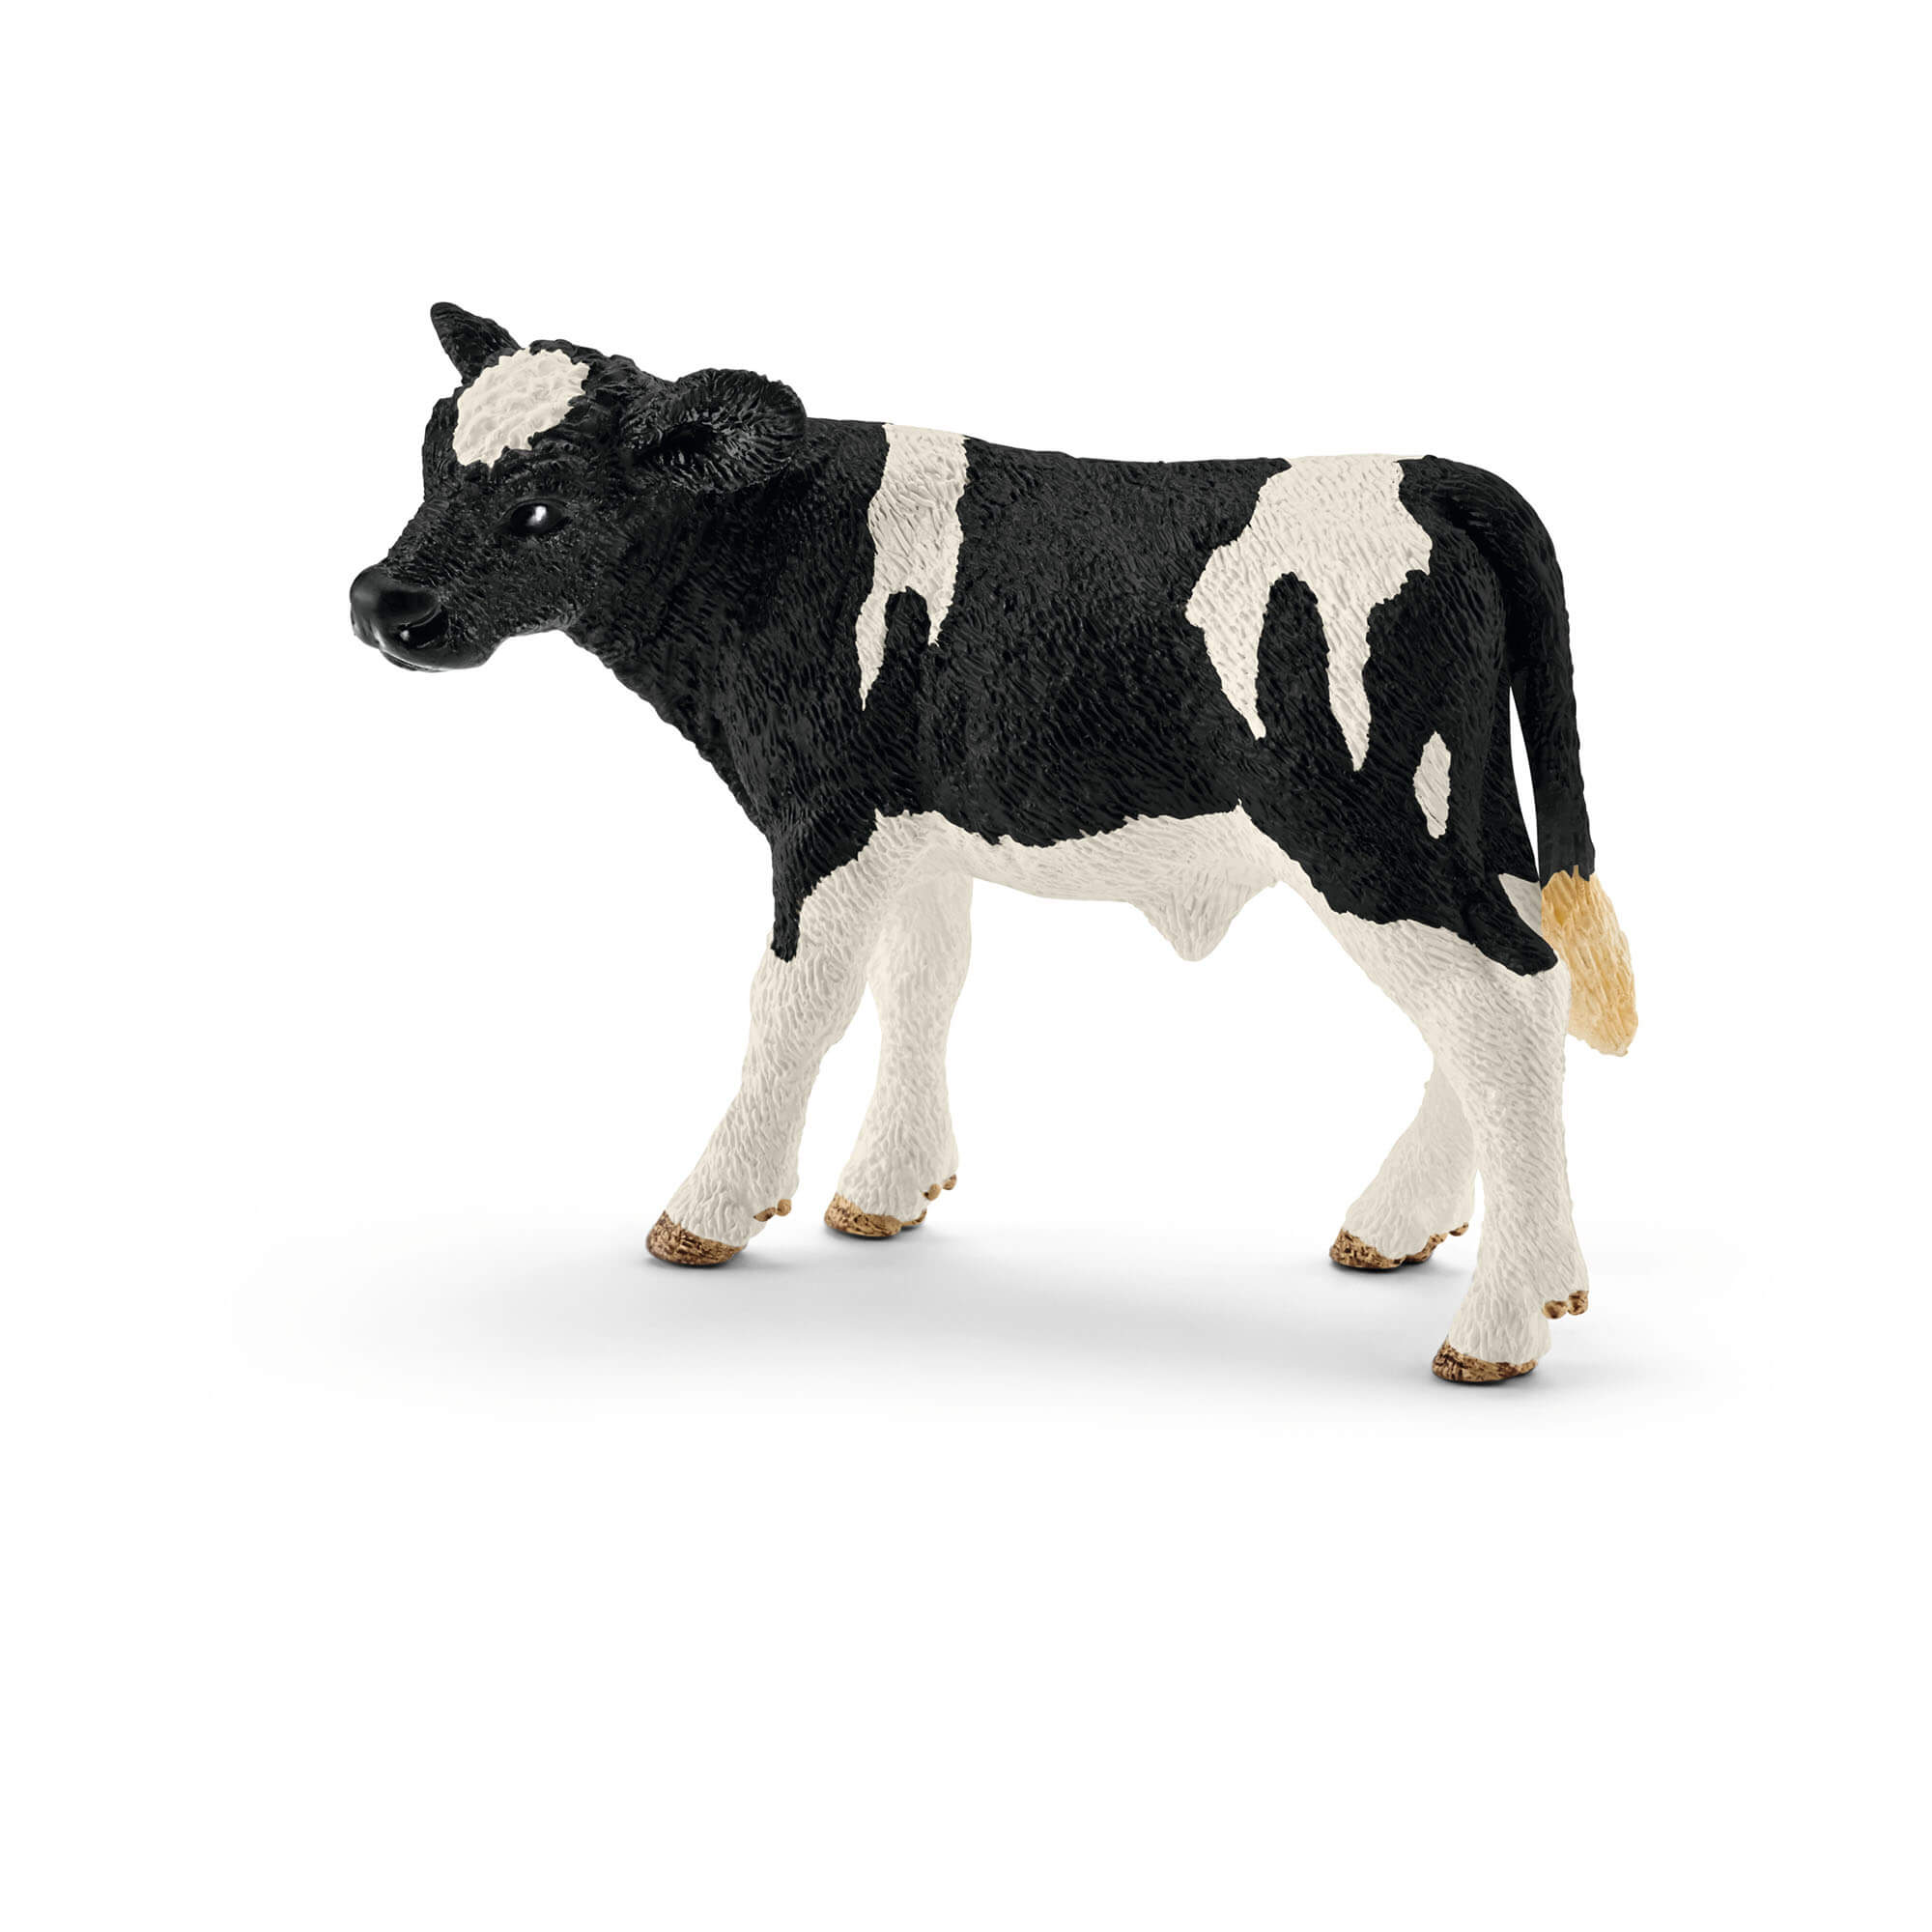 Schleich Farm World Holstein Calf Animal Figure